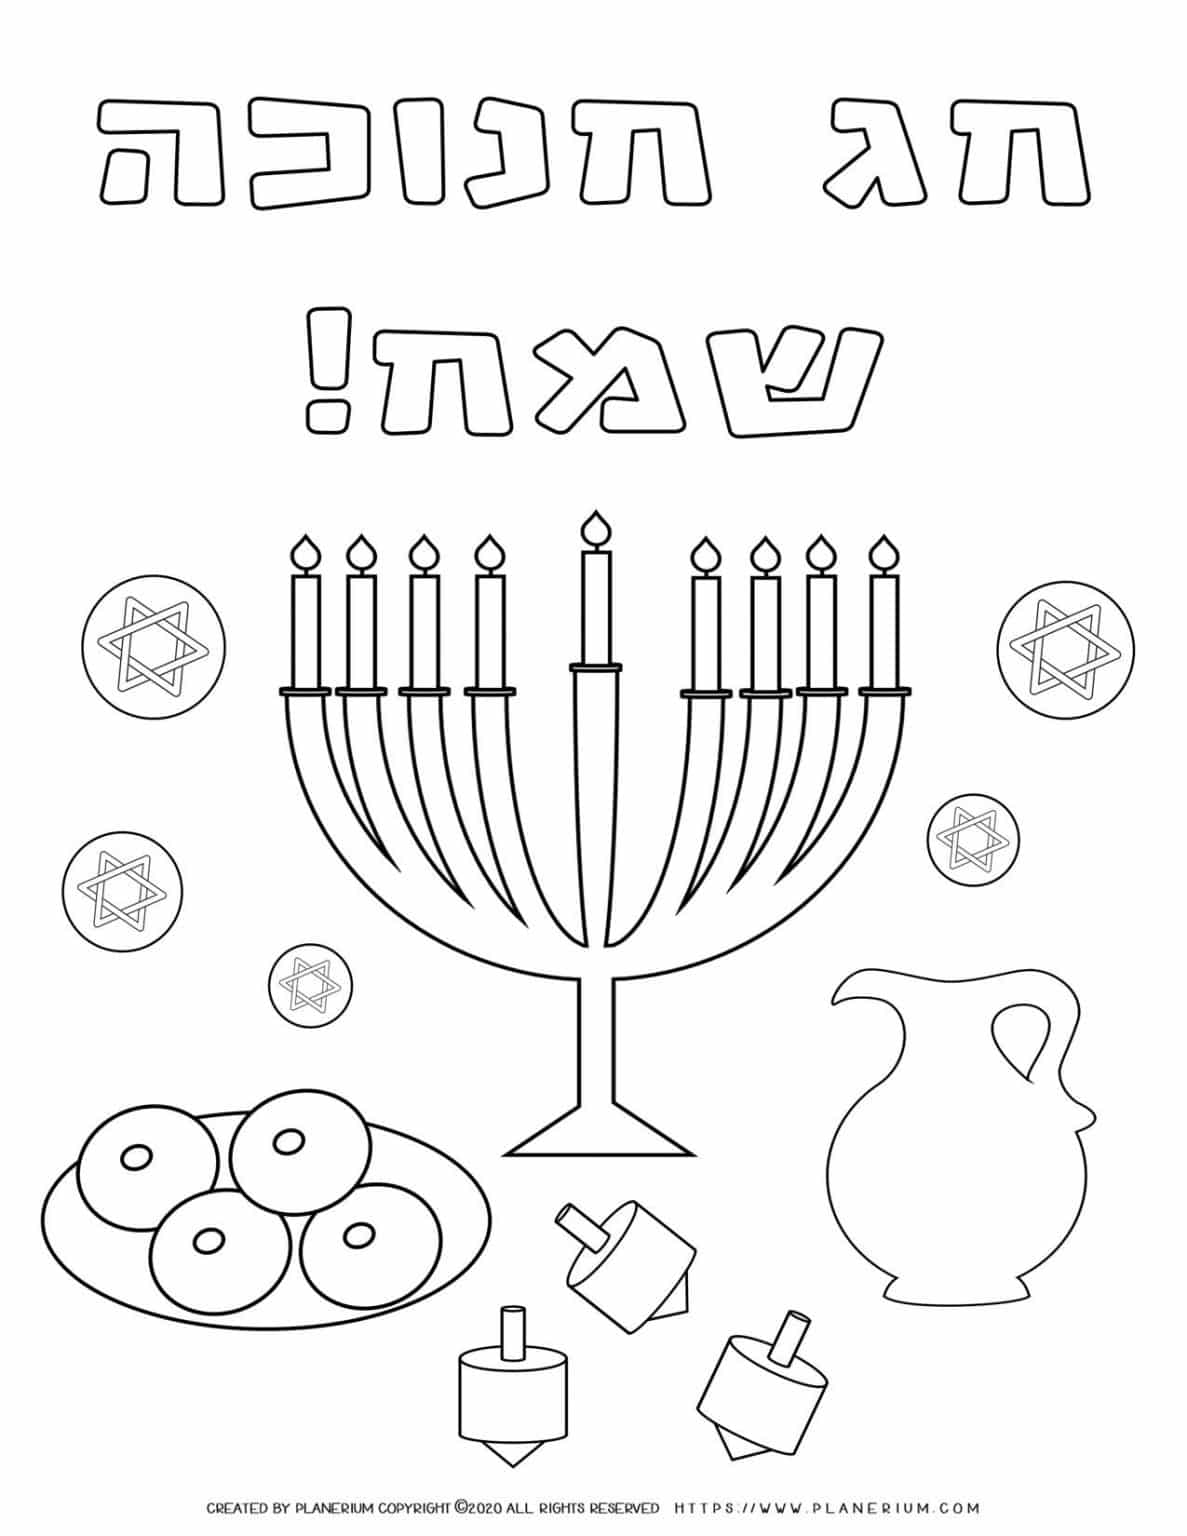 Happy Hanukkah   Coloring page   Free Printable in Hebrew   Planerium